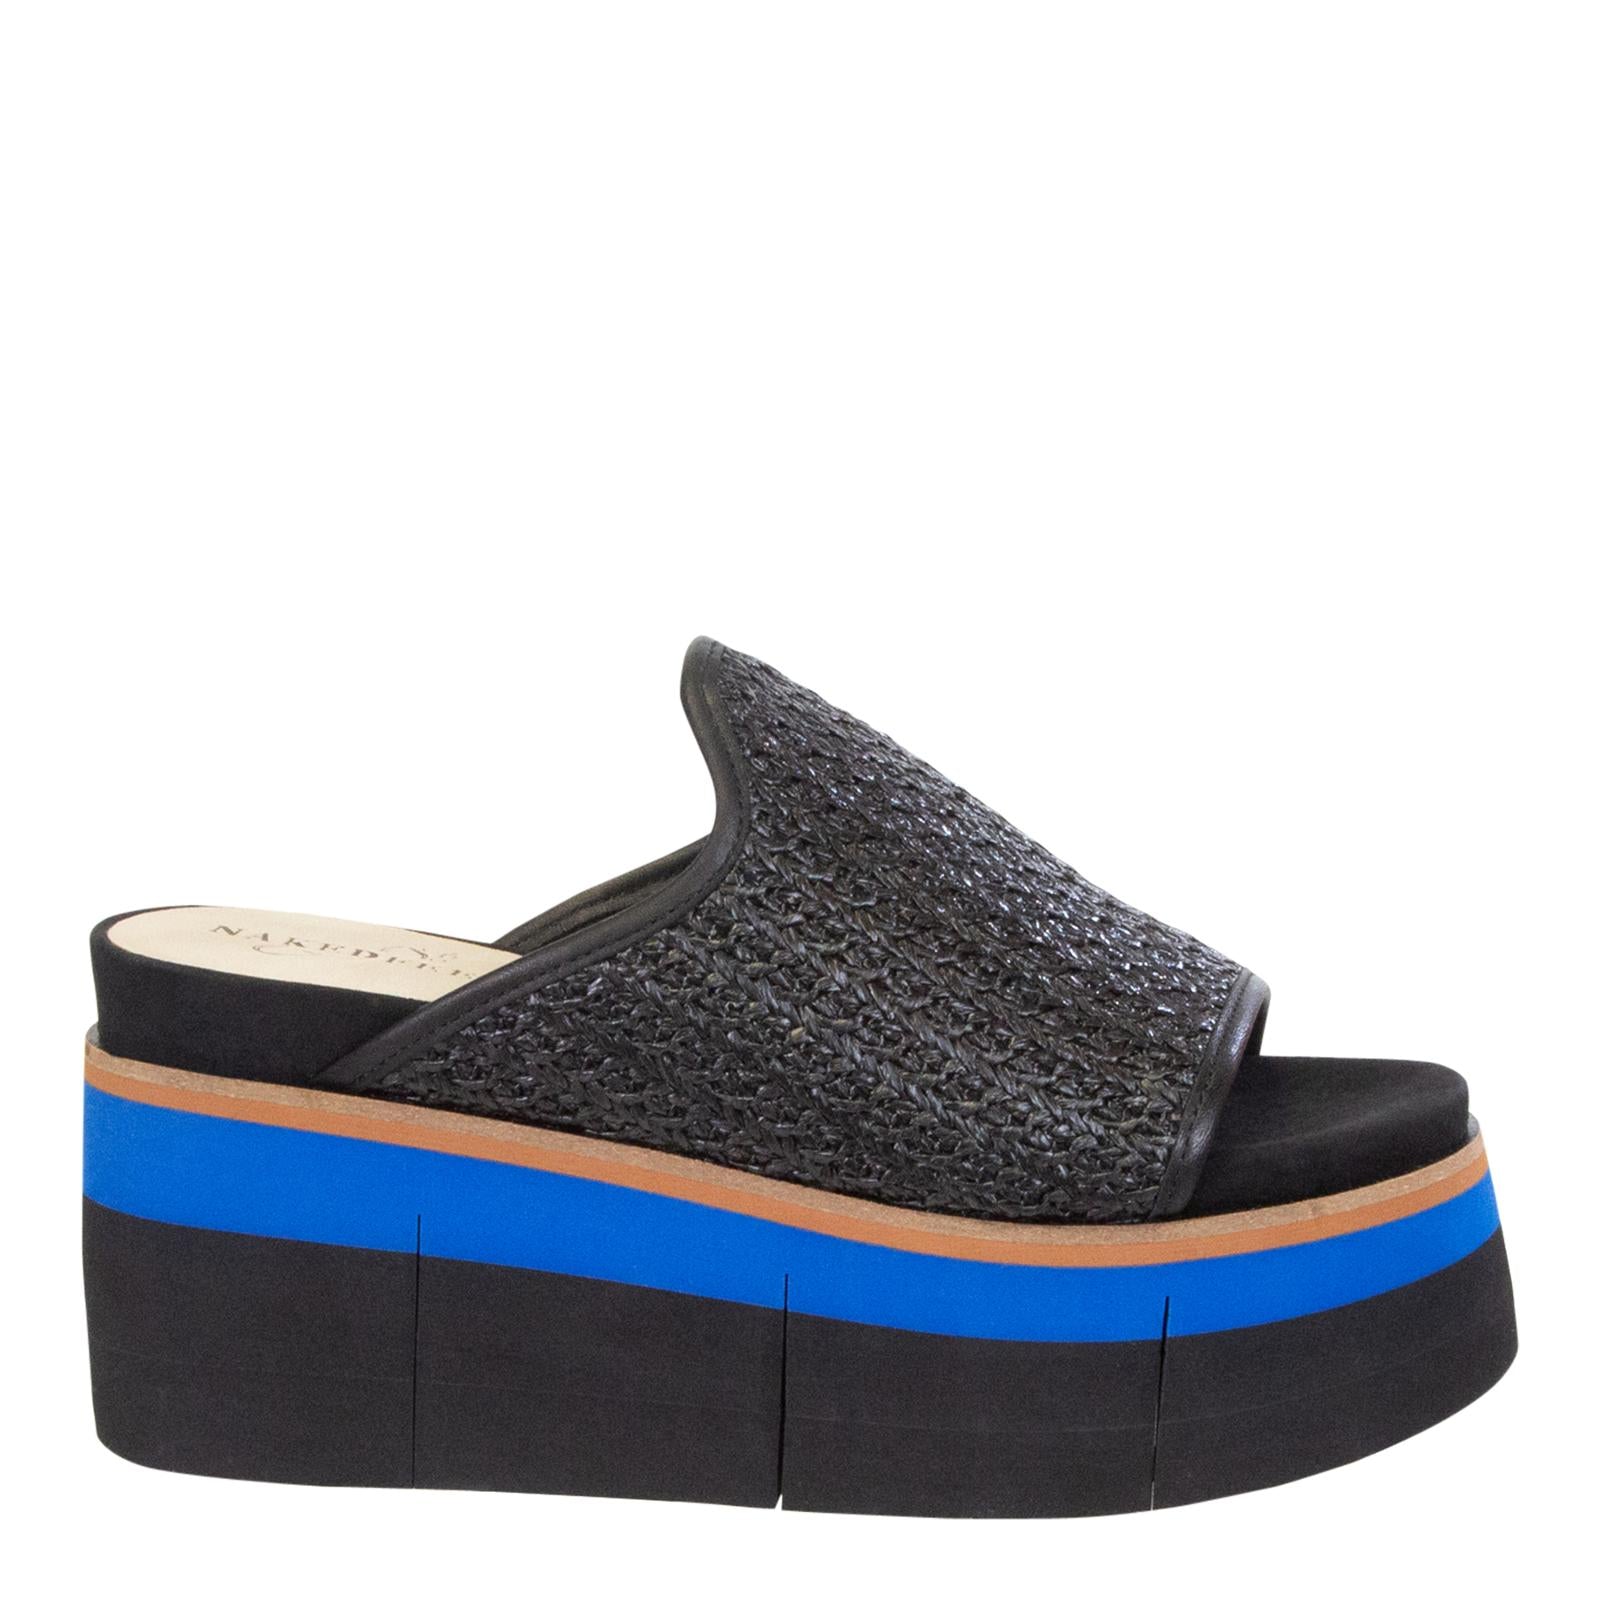 NAKED FEET - FLOCCI JET BLACK Wedge Sandals (ONLINE ONLY) – AL